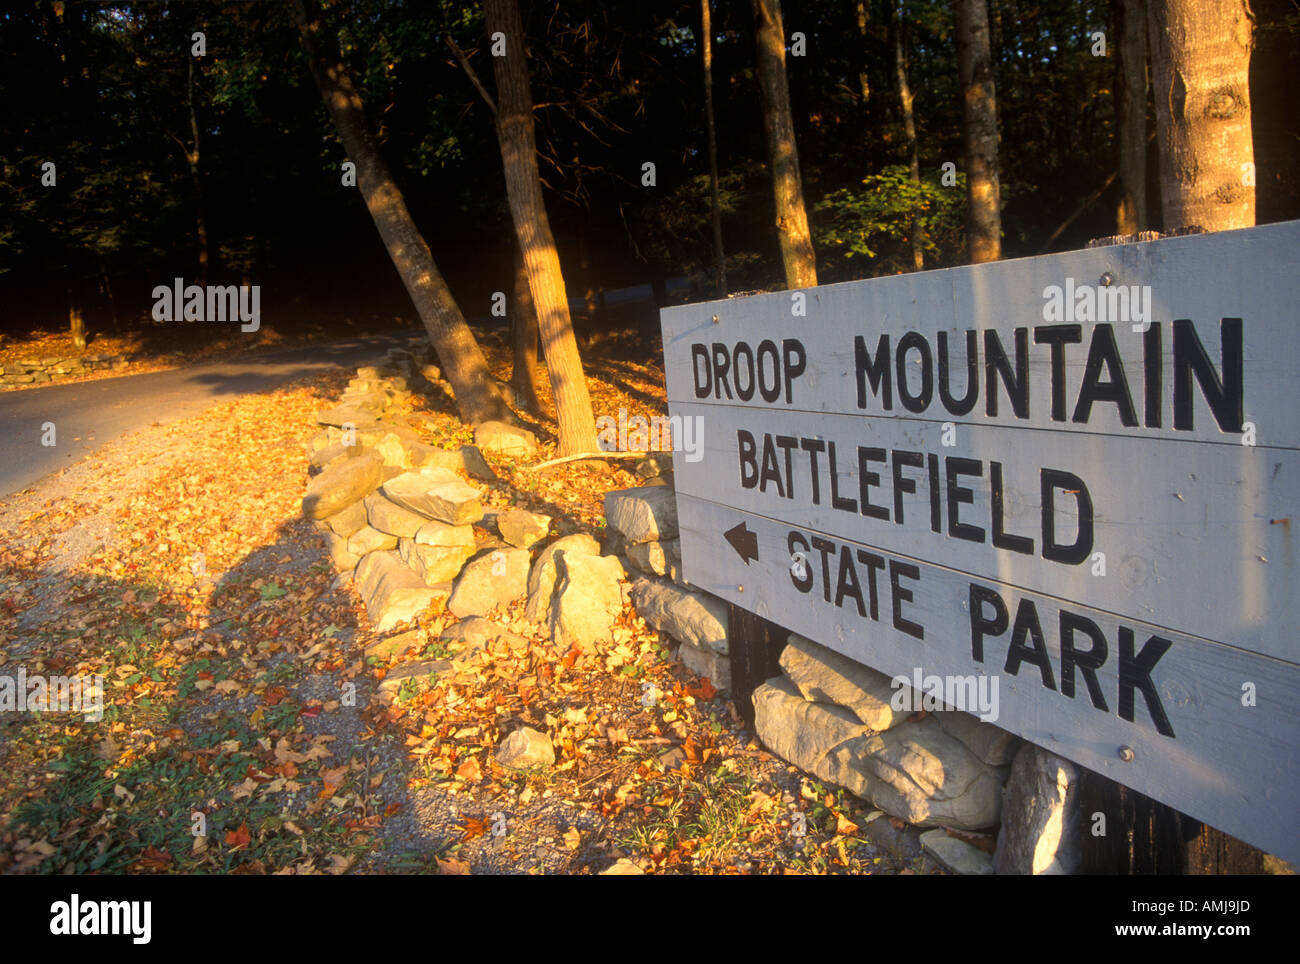 Panneau à l'entrée de la montagne de statisme Battlefield State Park bataille Guerre civile Scenic Route 39 WV Banque D'Images